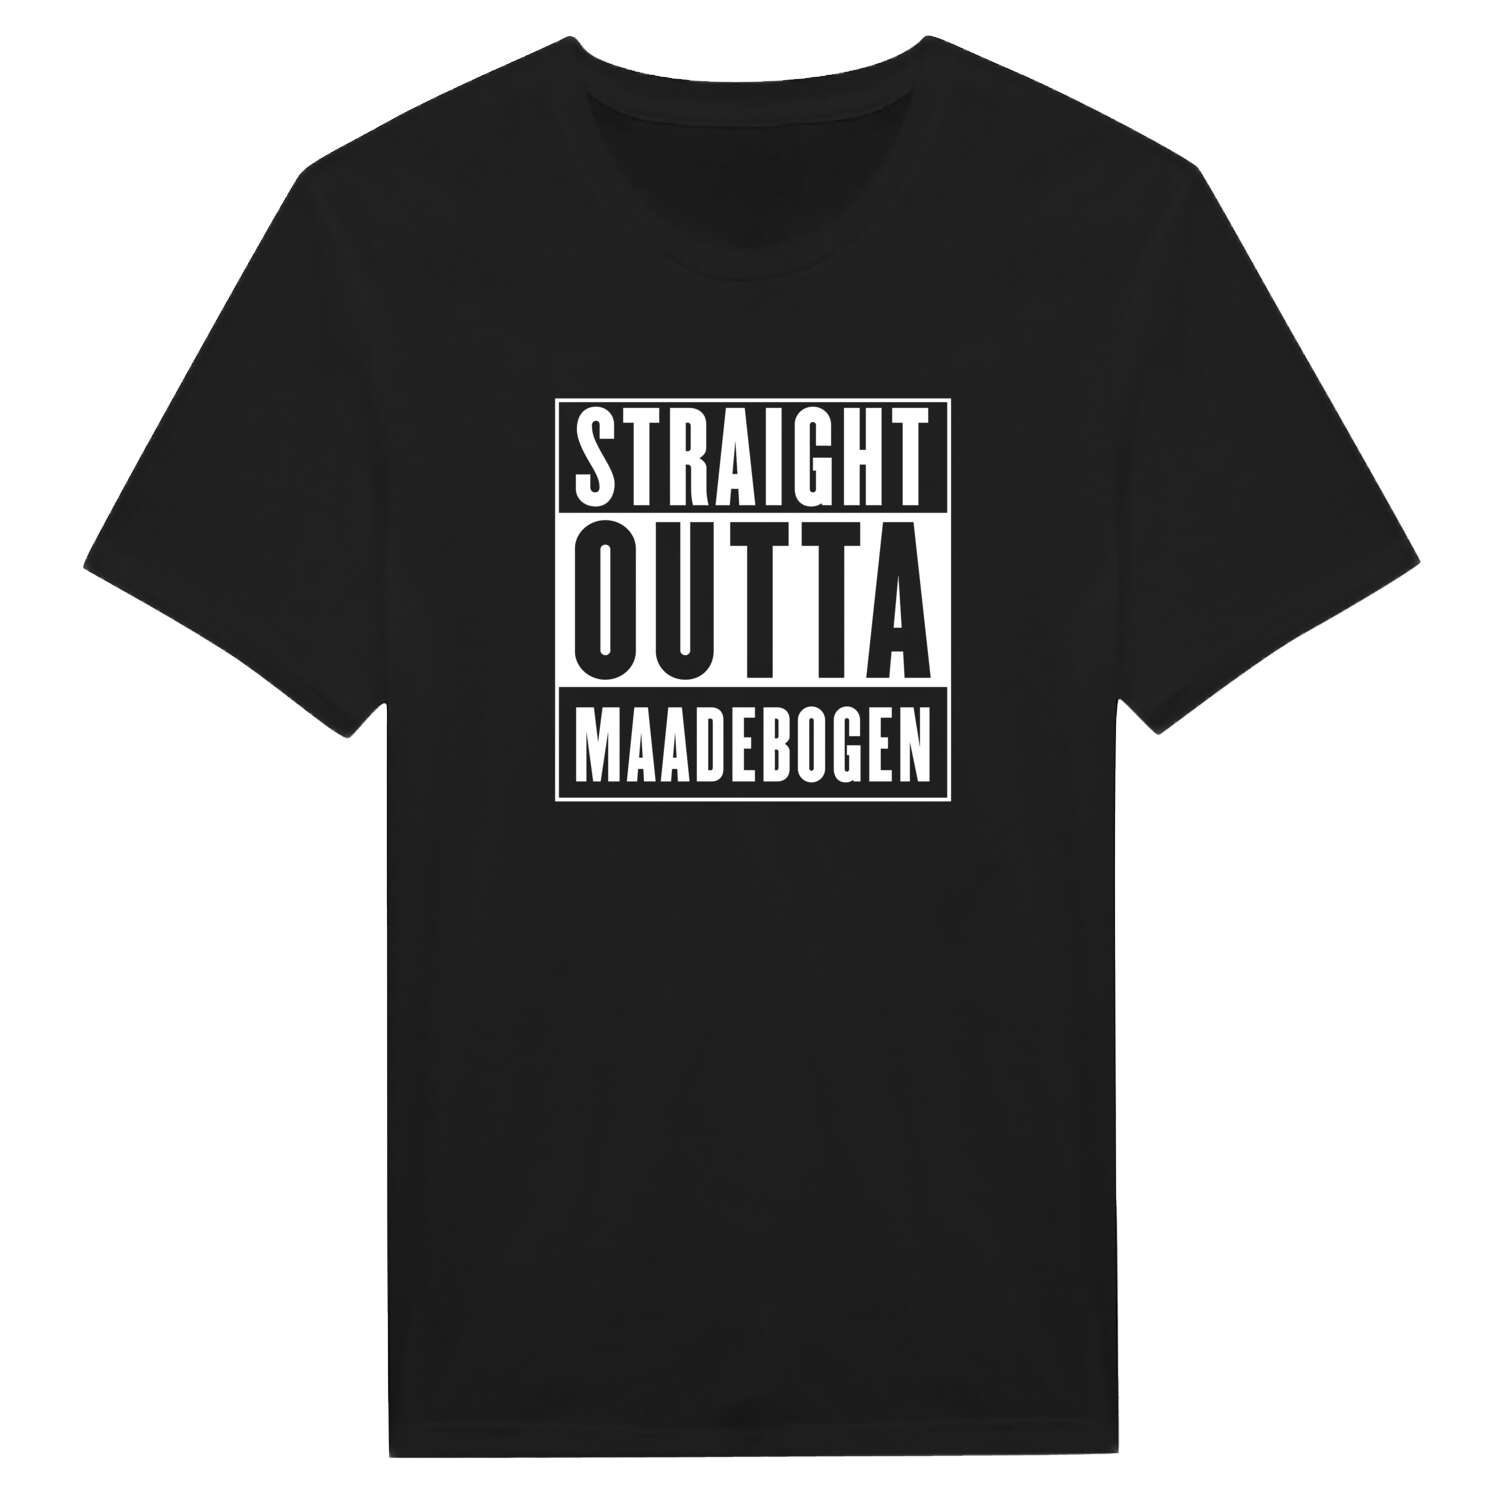 Maadebogen T-Shirt »Straight Outta«